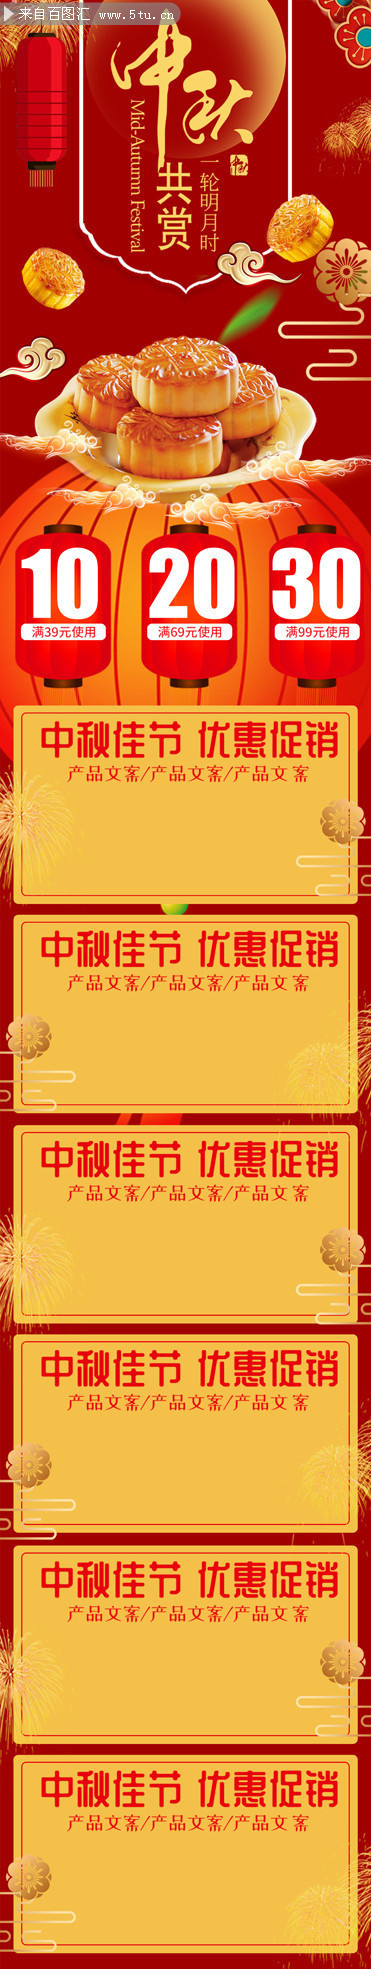 淘宝中秋节月饼促销详情页装修模板